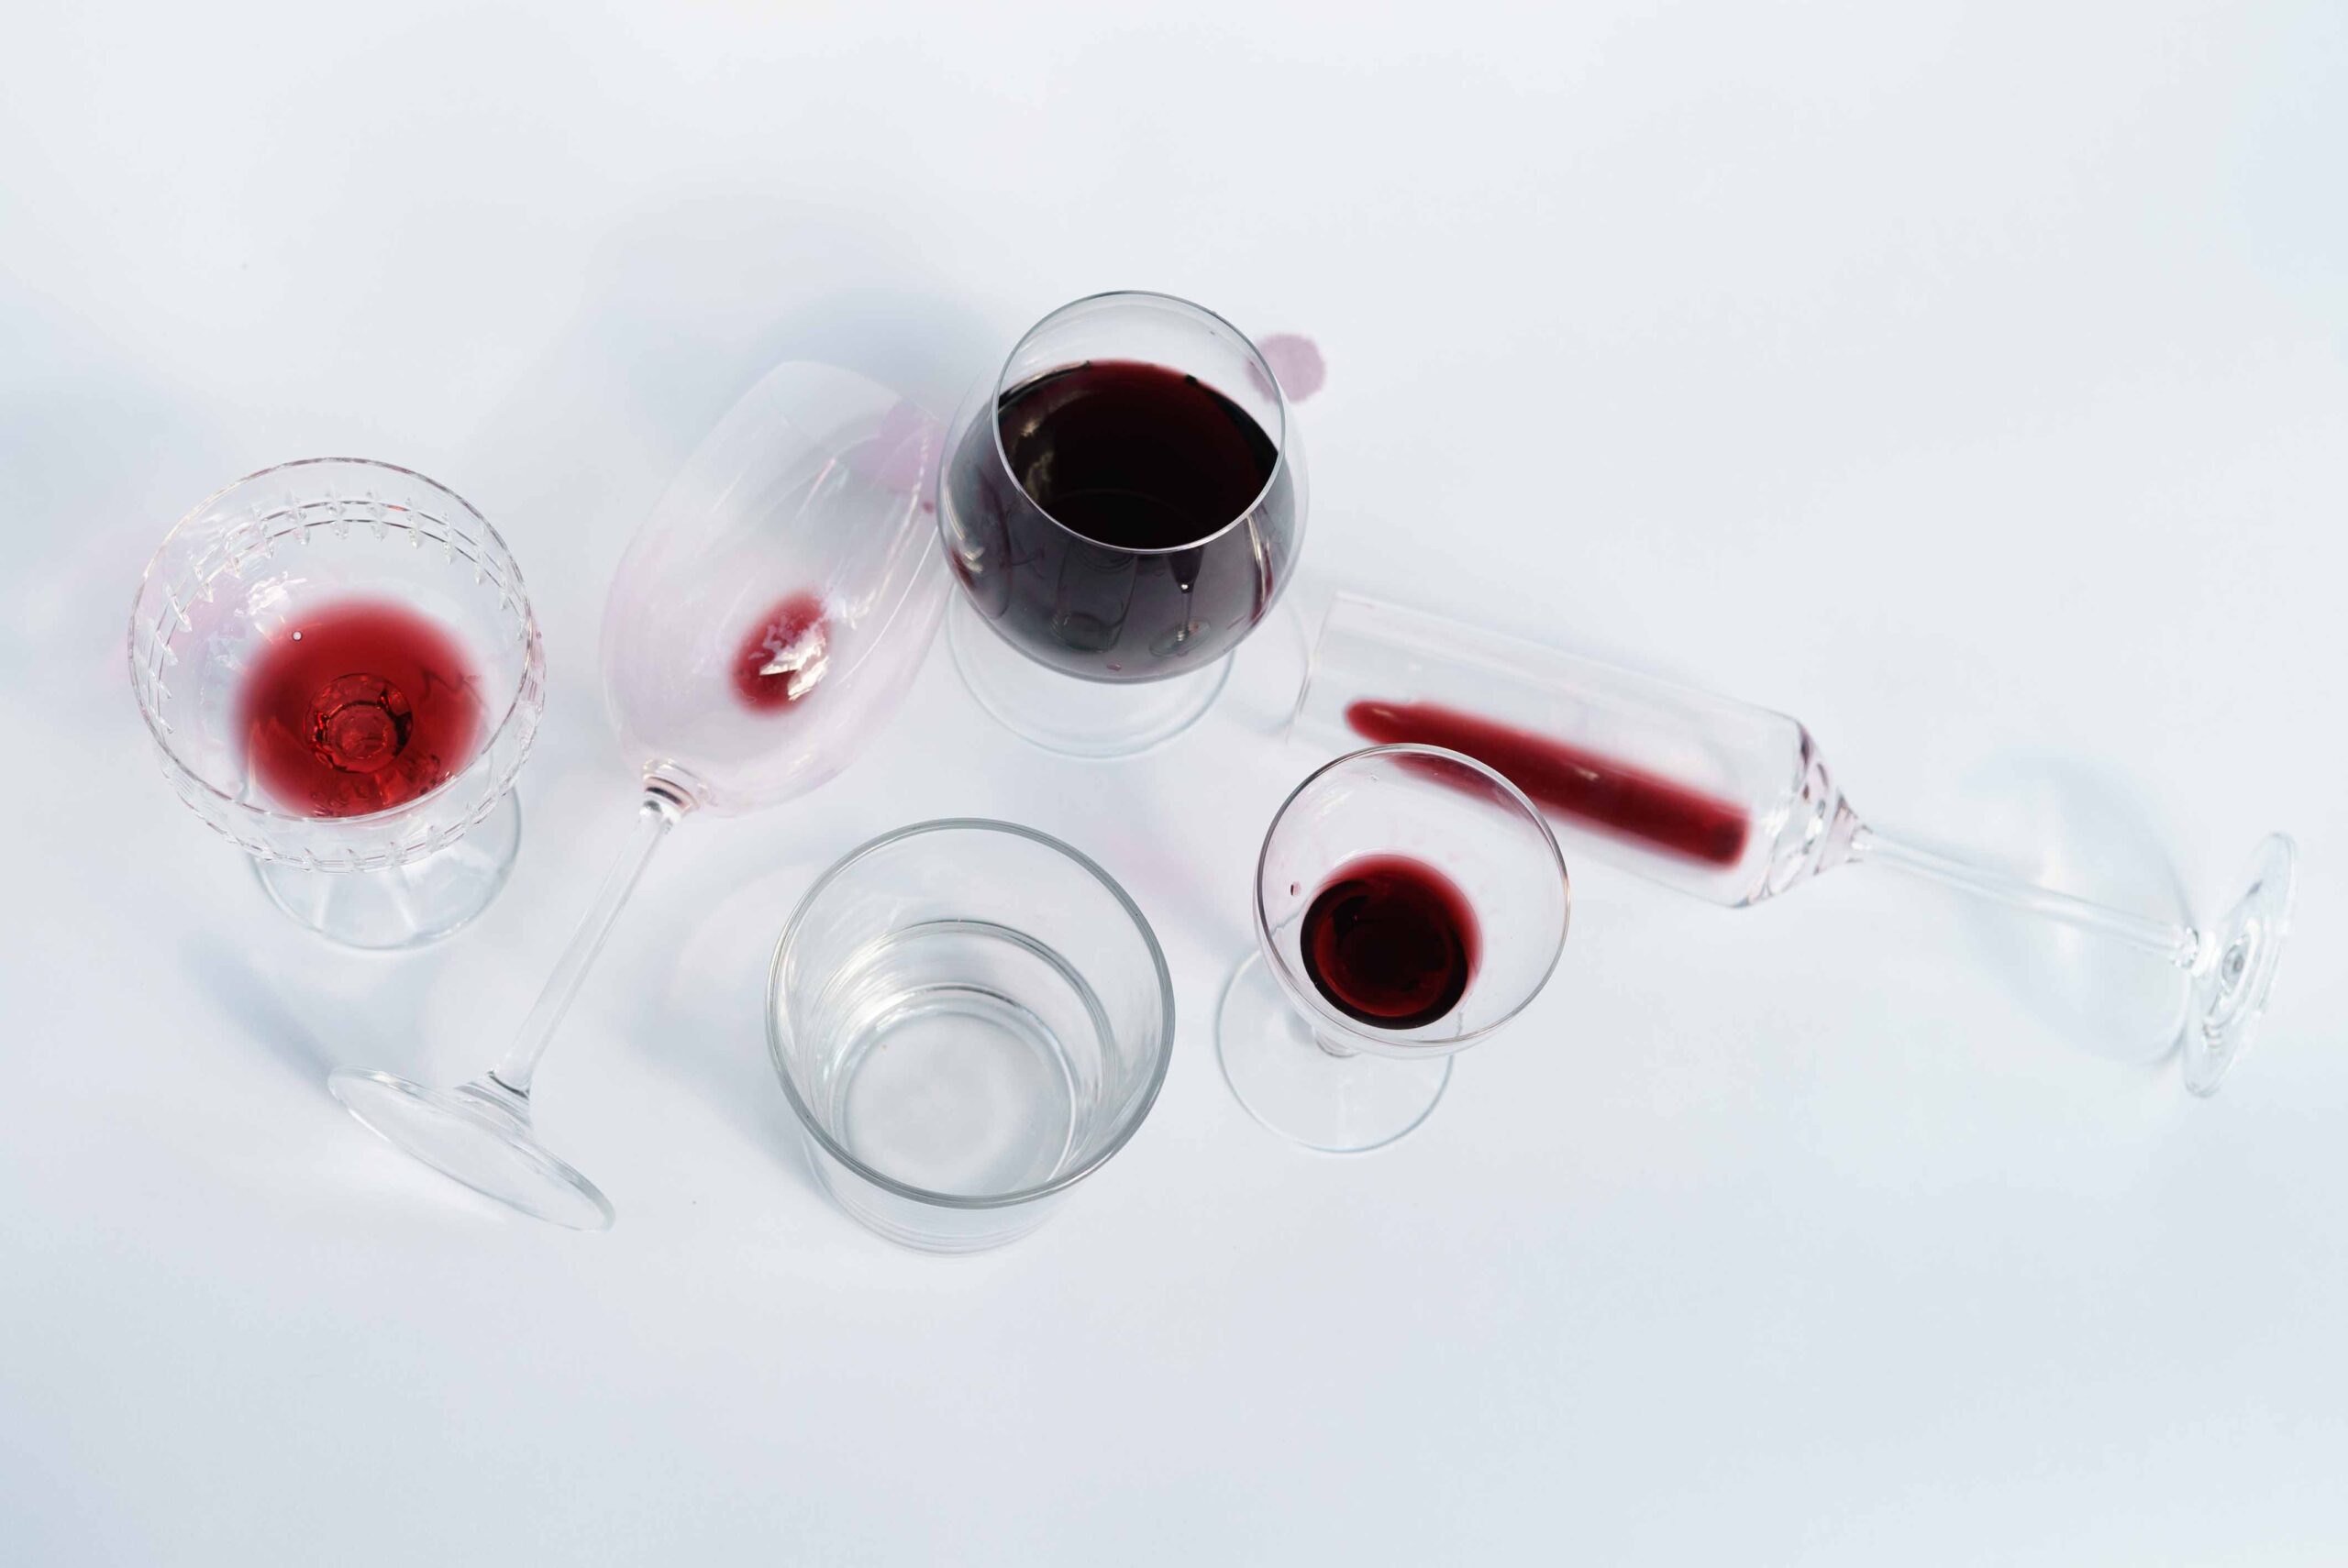 Die Genussregion Salzburg hat auch dieses Jahr viel zu bieten - die besten Weinveranstaltungen 2023 in Salzburg hat JUST zusammengefasst.